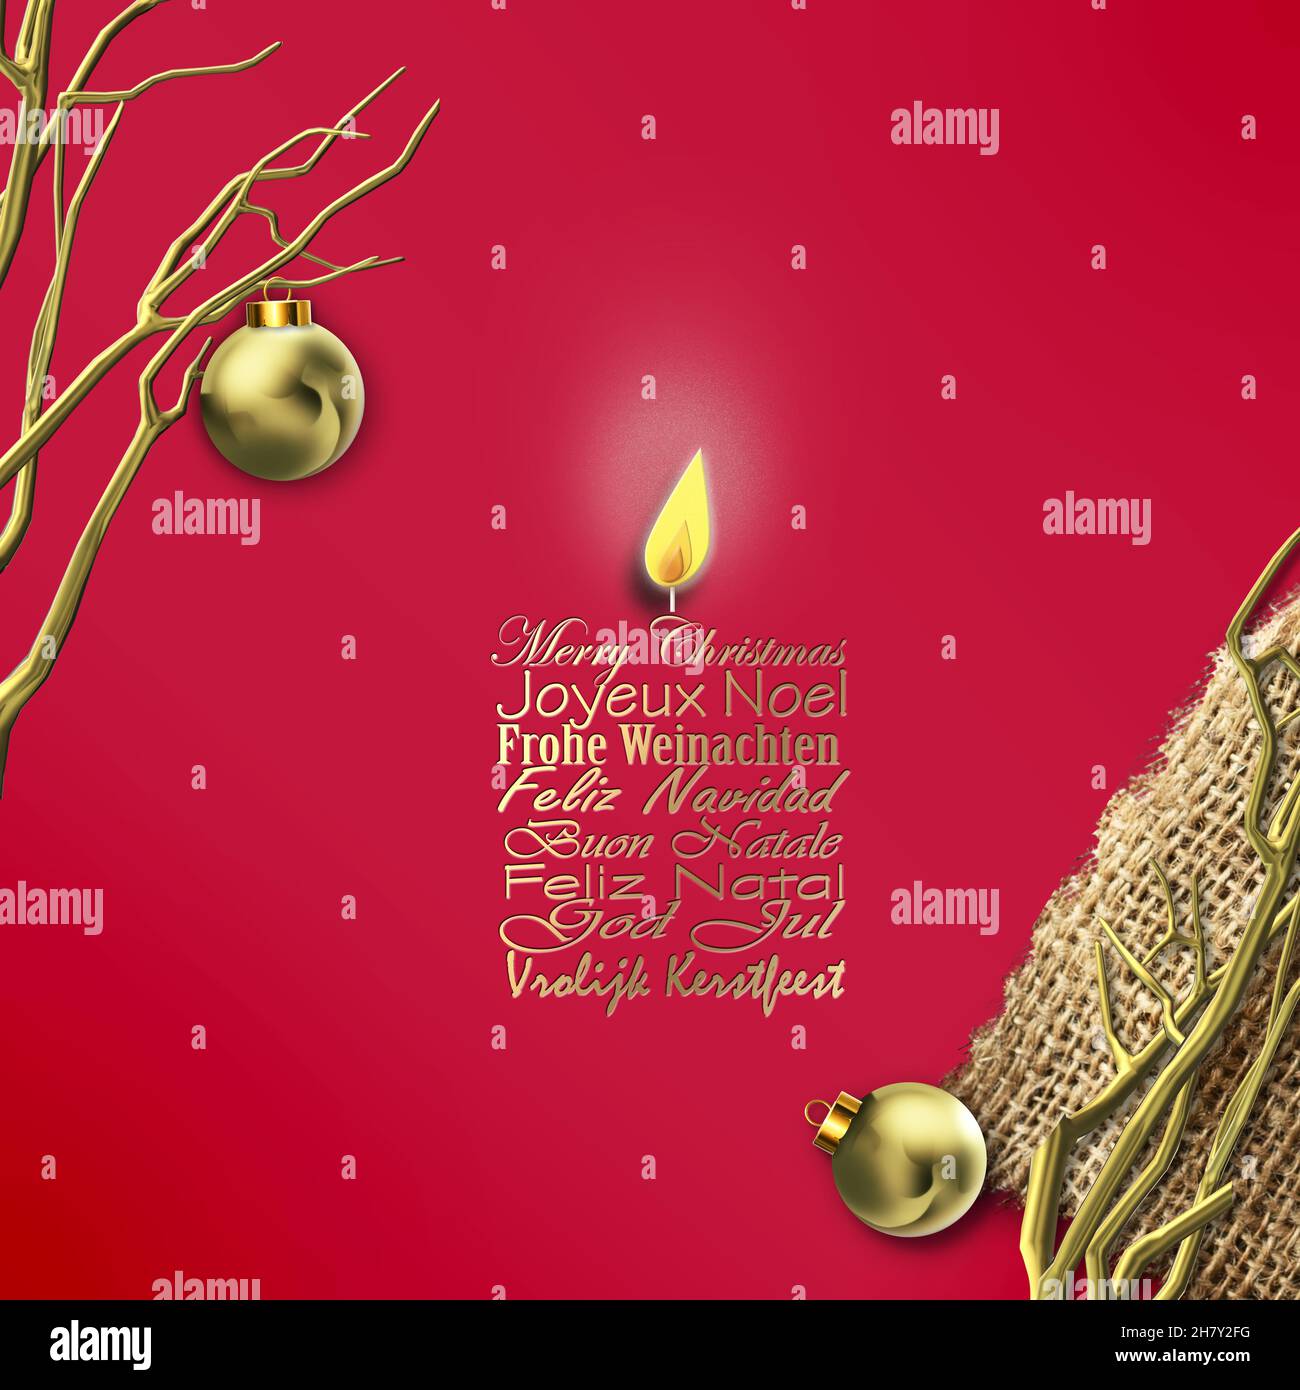 Merry Christmas veut traduction en anglais, français allemand portugais italien espagnol suédois sur fond rouge en forme de bougie, or branches abstraites d'arbre sur la canva, boules d'or de Noël. 3Drender Banque D'Images